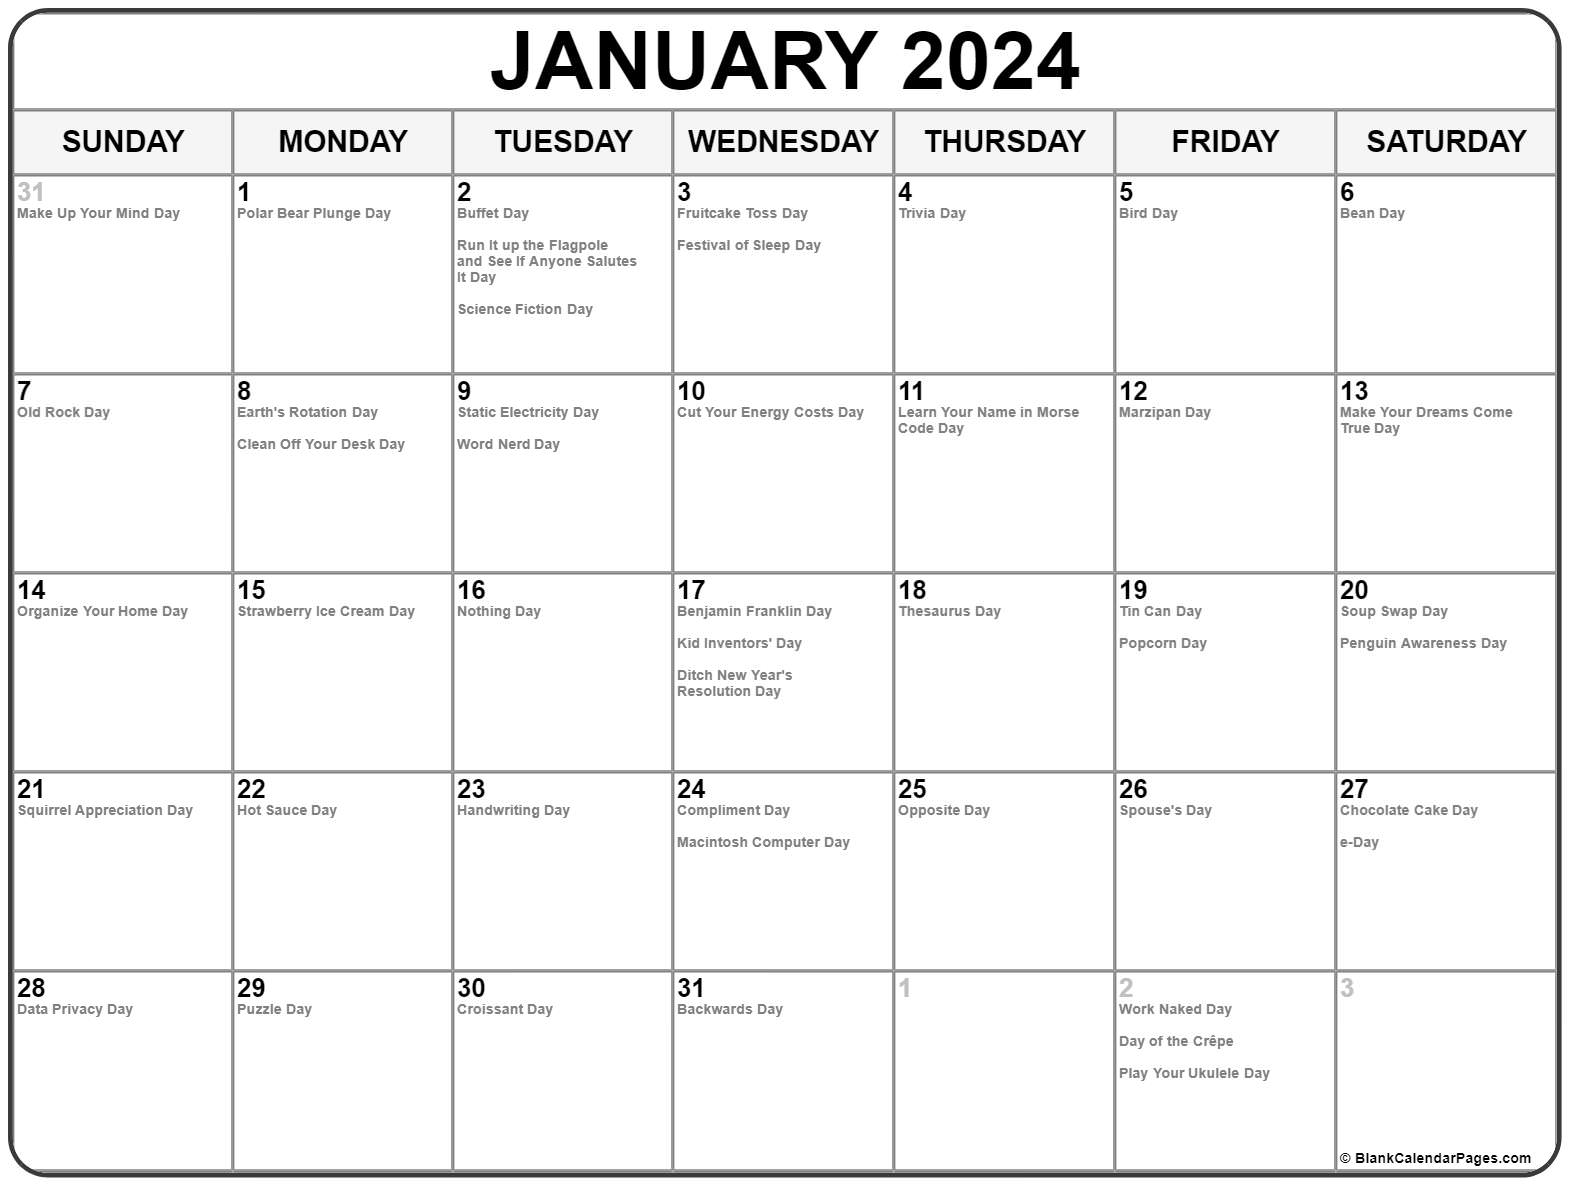 January 2024 Calendar Fun Holidays1 